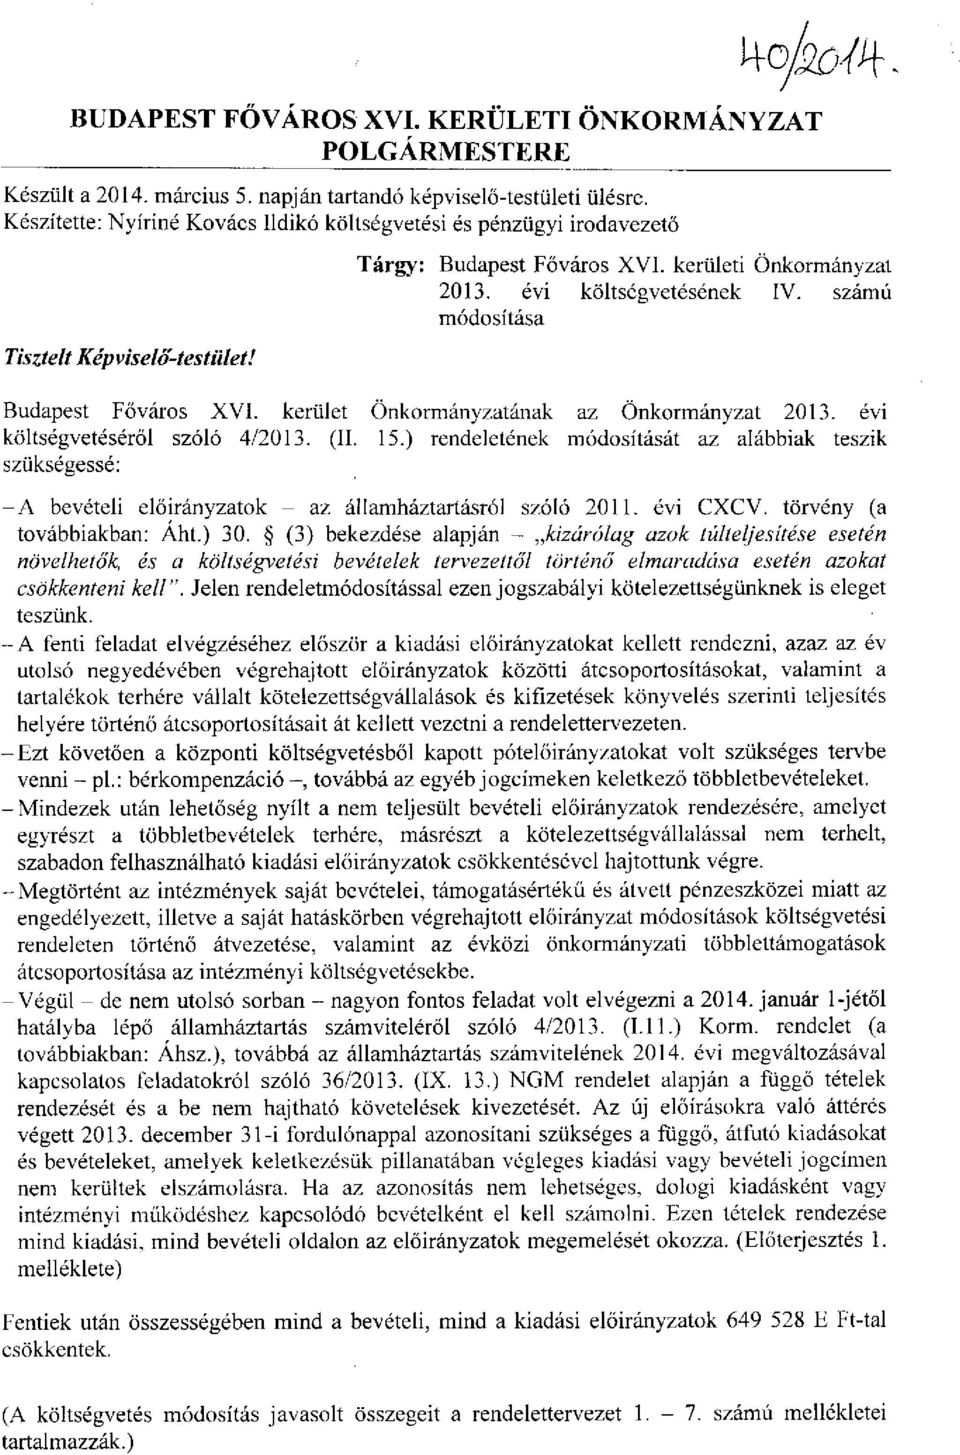 Budapest Főváros XVI. kerület Önkormányzatának az Önkormányzat 2013. évi költségvetéséről szóló 4/2013. (II. 15.